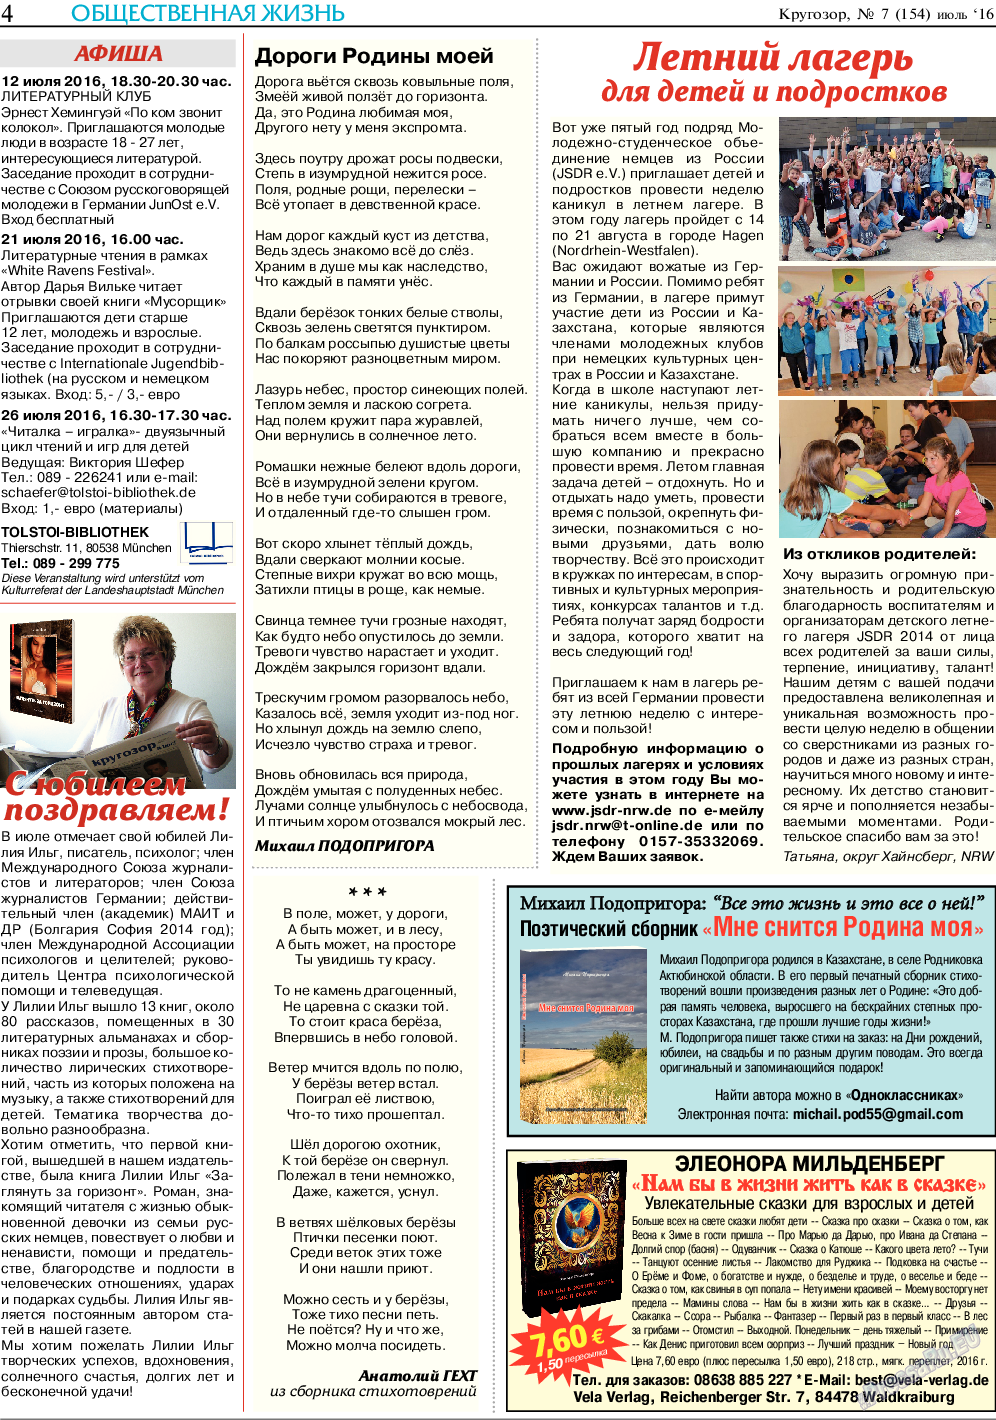 Кругозор, газета. 2016 №7 стр.4